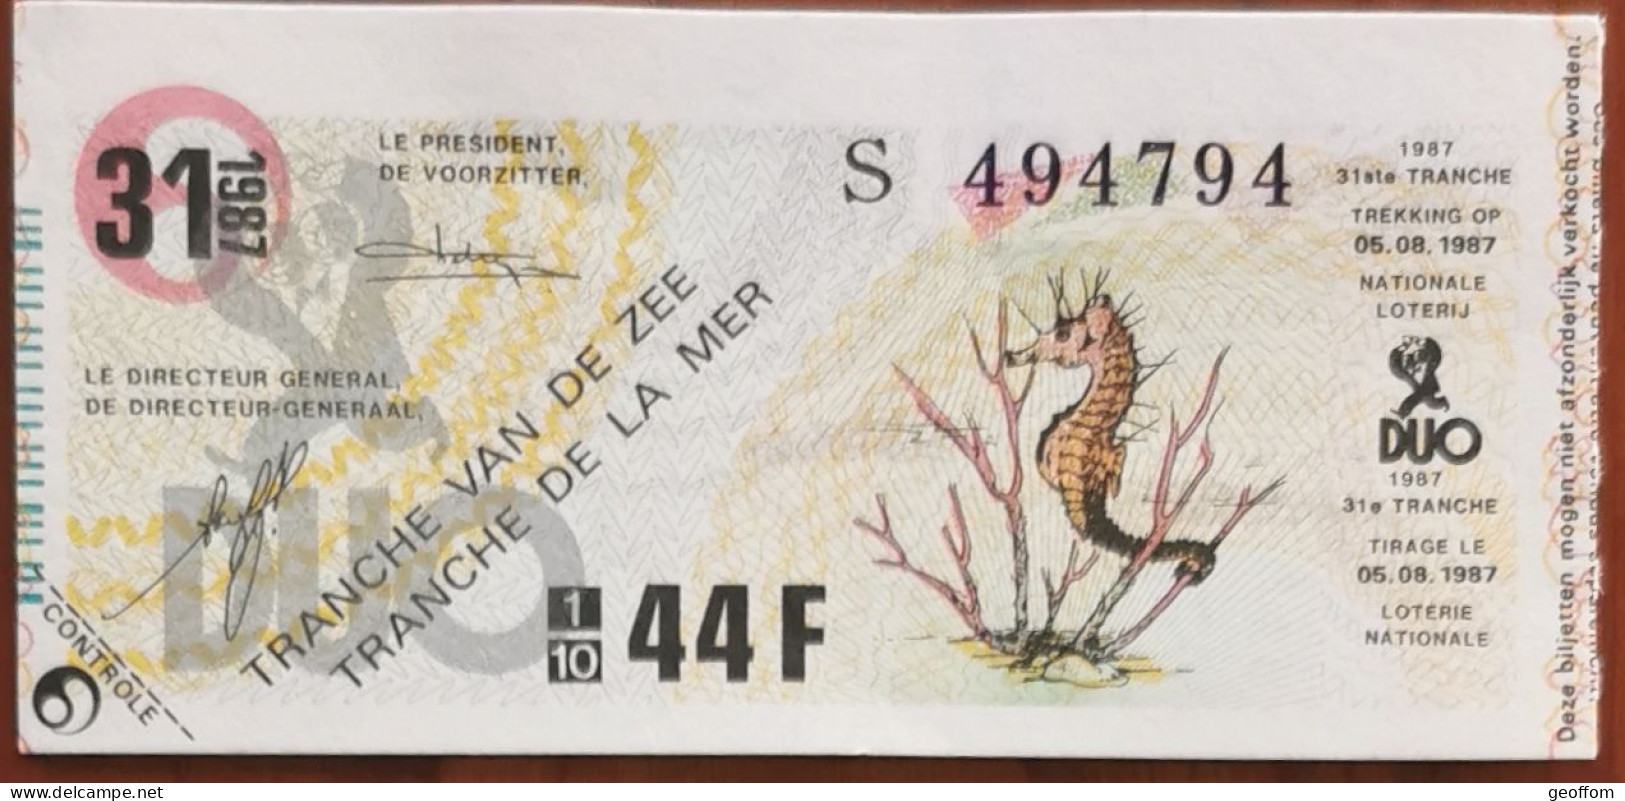 Billet De Loterie Nationale Belgique 1987 31e Tranche De La Mer- 5-8-1987 - Billetes De Lotería